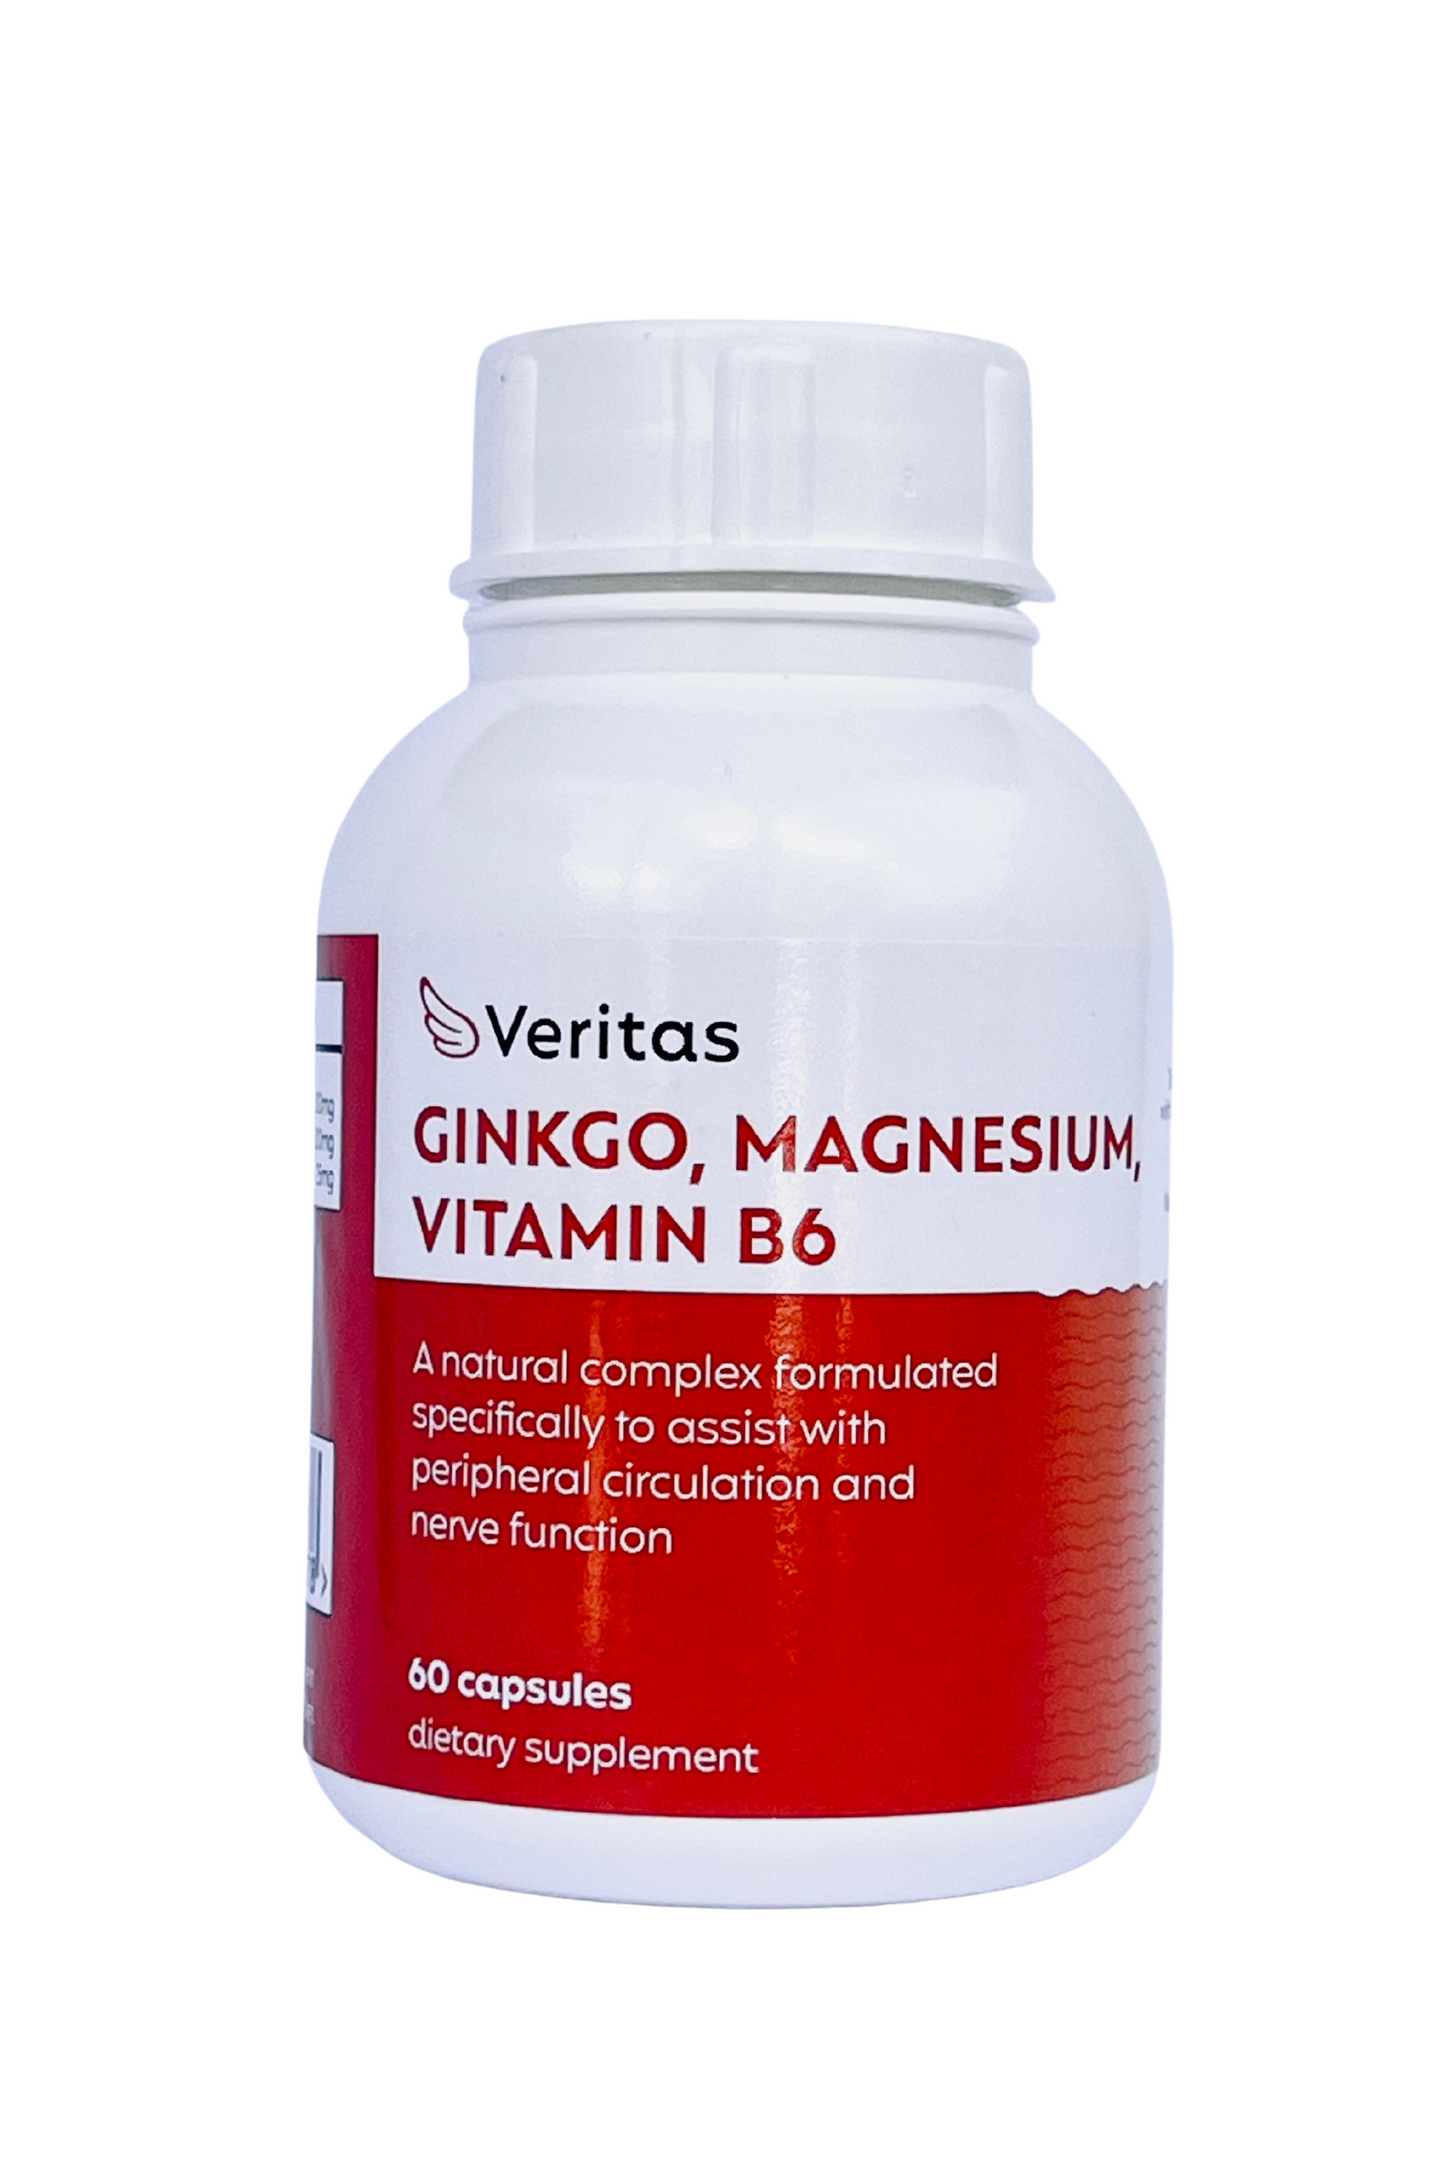 Ginko, Magnesium, Vitamin B6